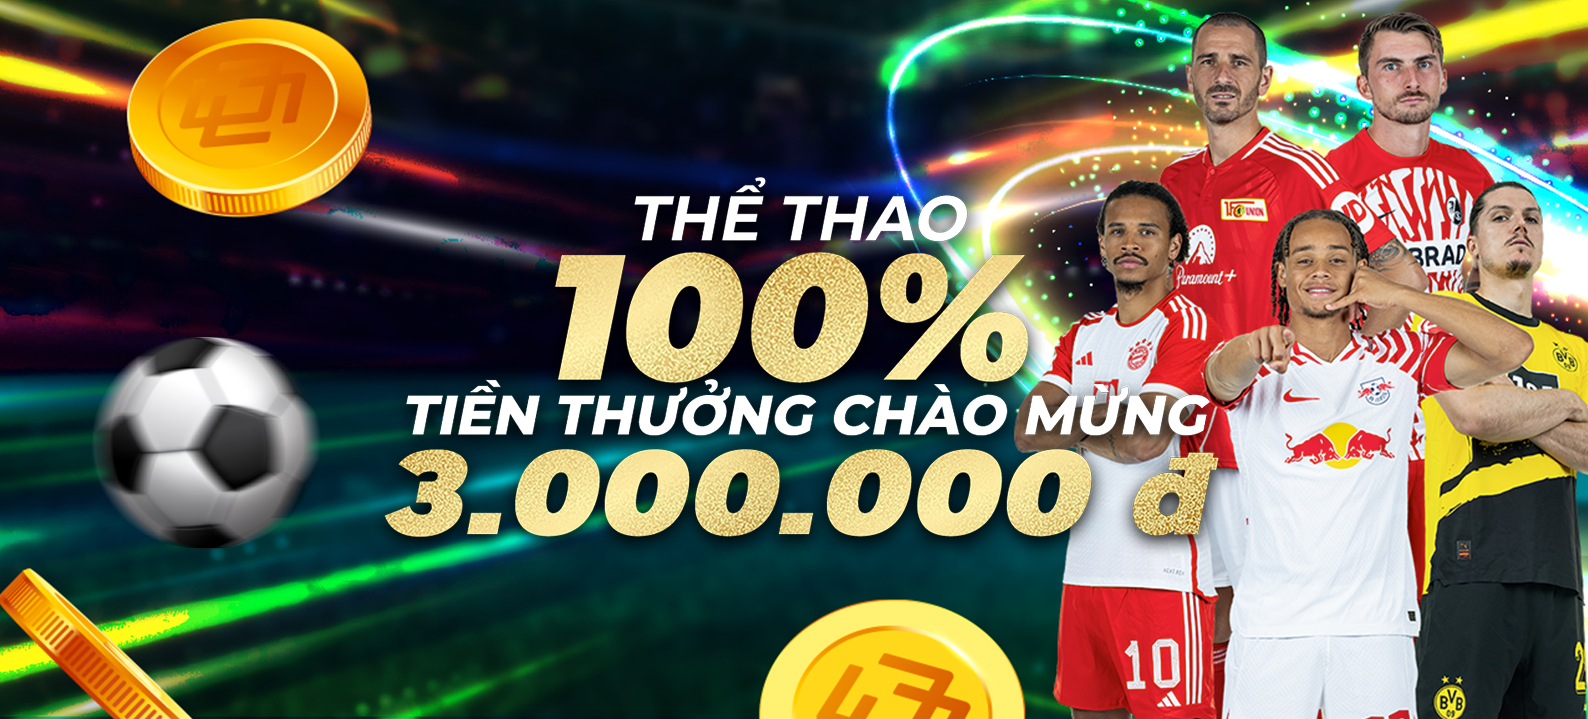 Gửi tiền lần đầu -THỂ THAO: thưởng 100% lên đến 3.000.000 VND